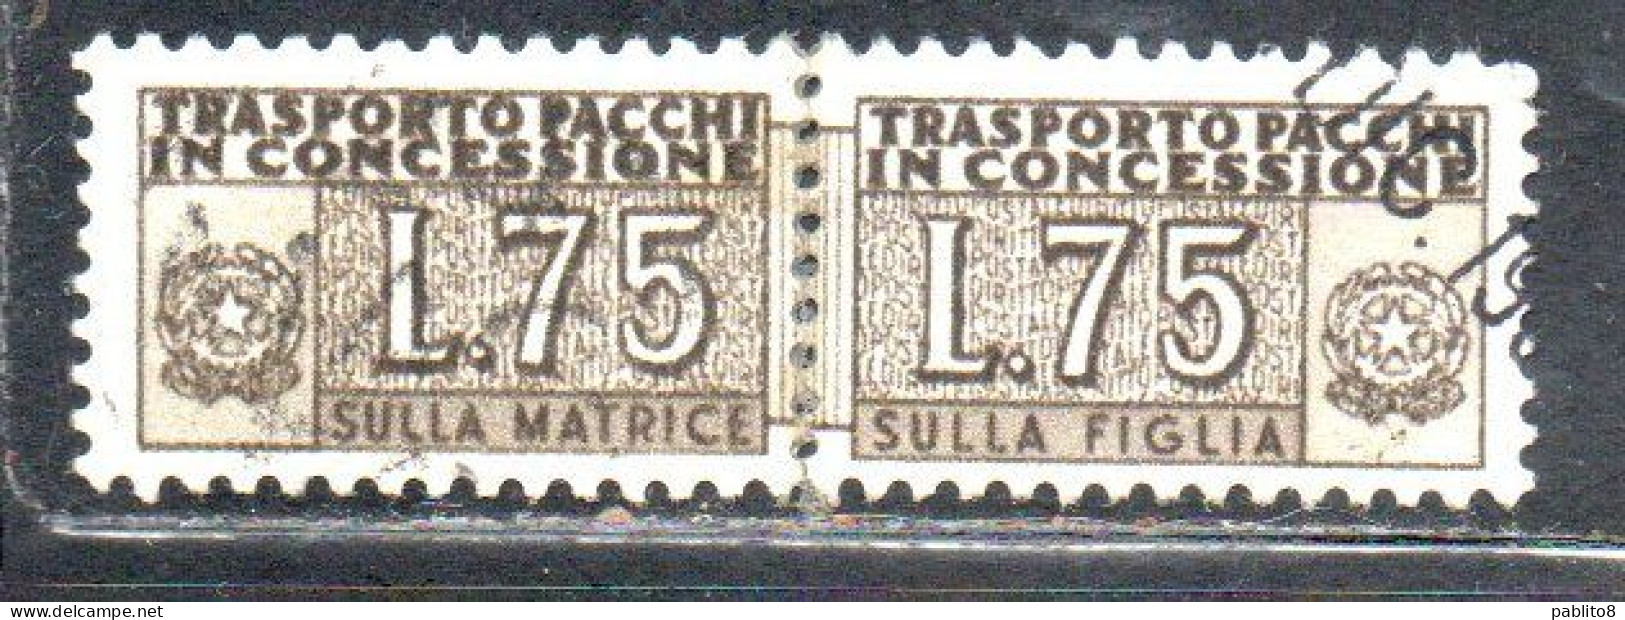 ITALIA REPUBBLICA ITALY REPUBLIC 1955 1981 PACCHI IN CONCESSIONE PARCEL POST STELLE STARS LIRE 75 USATO USED OBLIT - Paquetes En Consigna